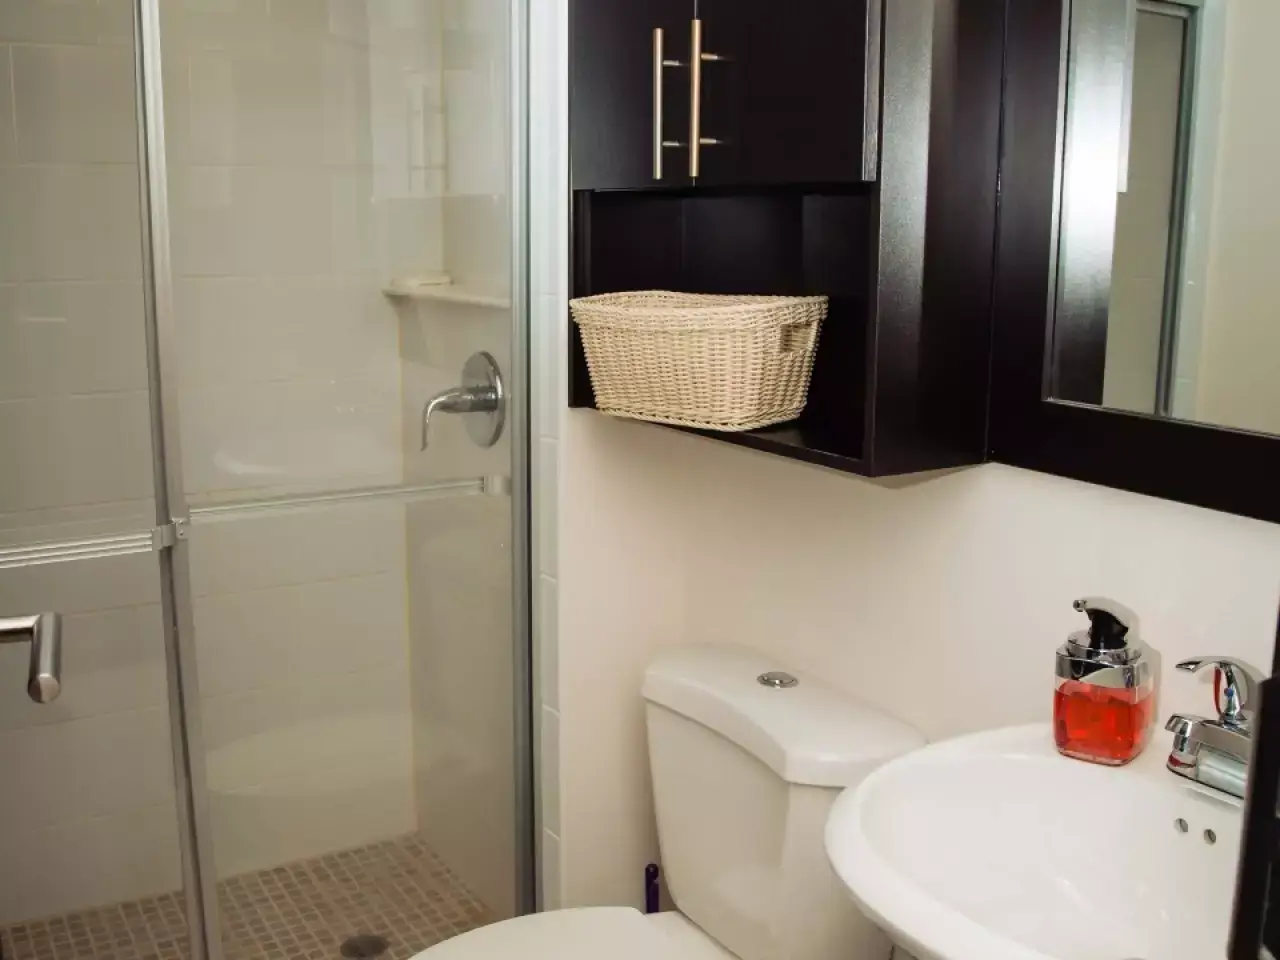 baño completo con regadera con suelo de ceramica, retrete y lavamanos de color blanco a juego y un mueble de madera oscura para guardas objetos de higiene personal